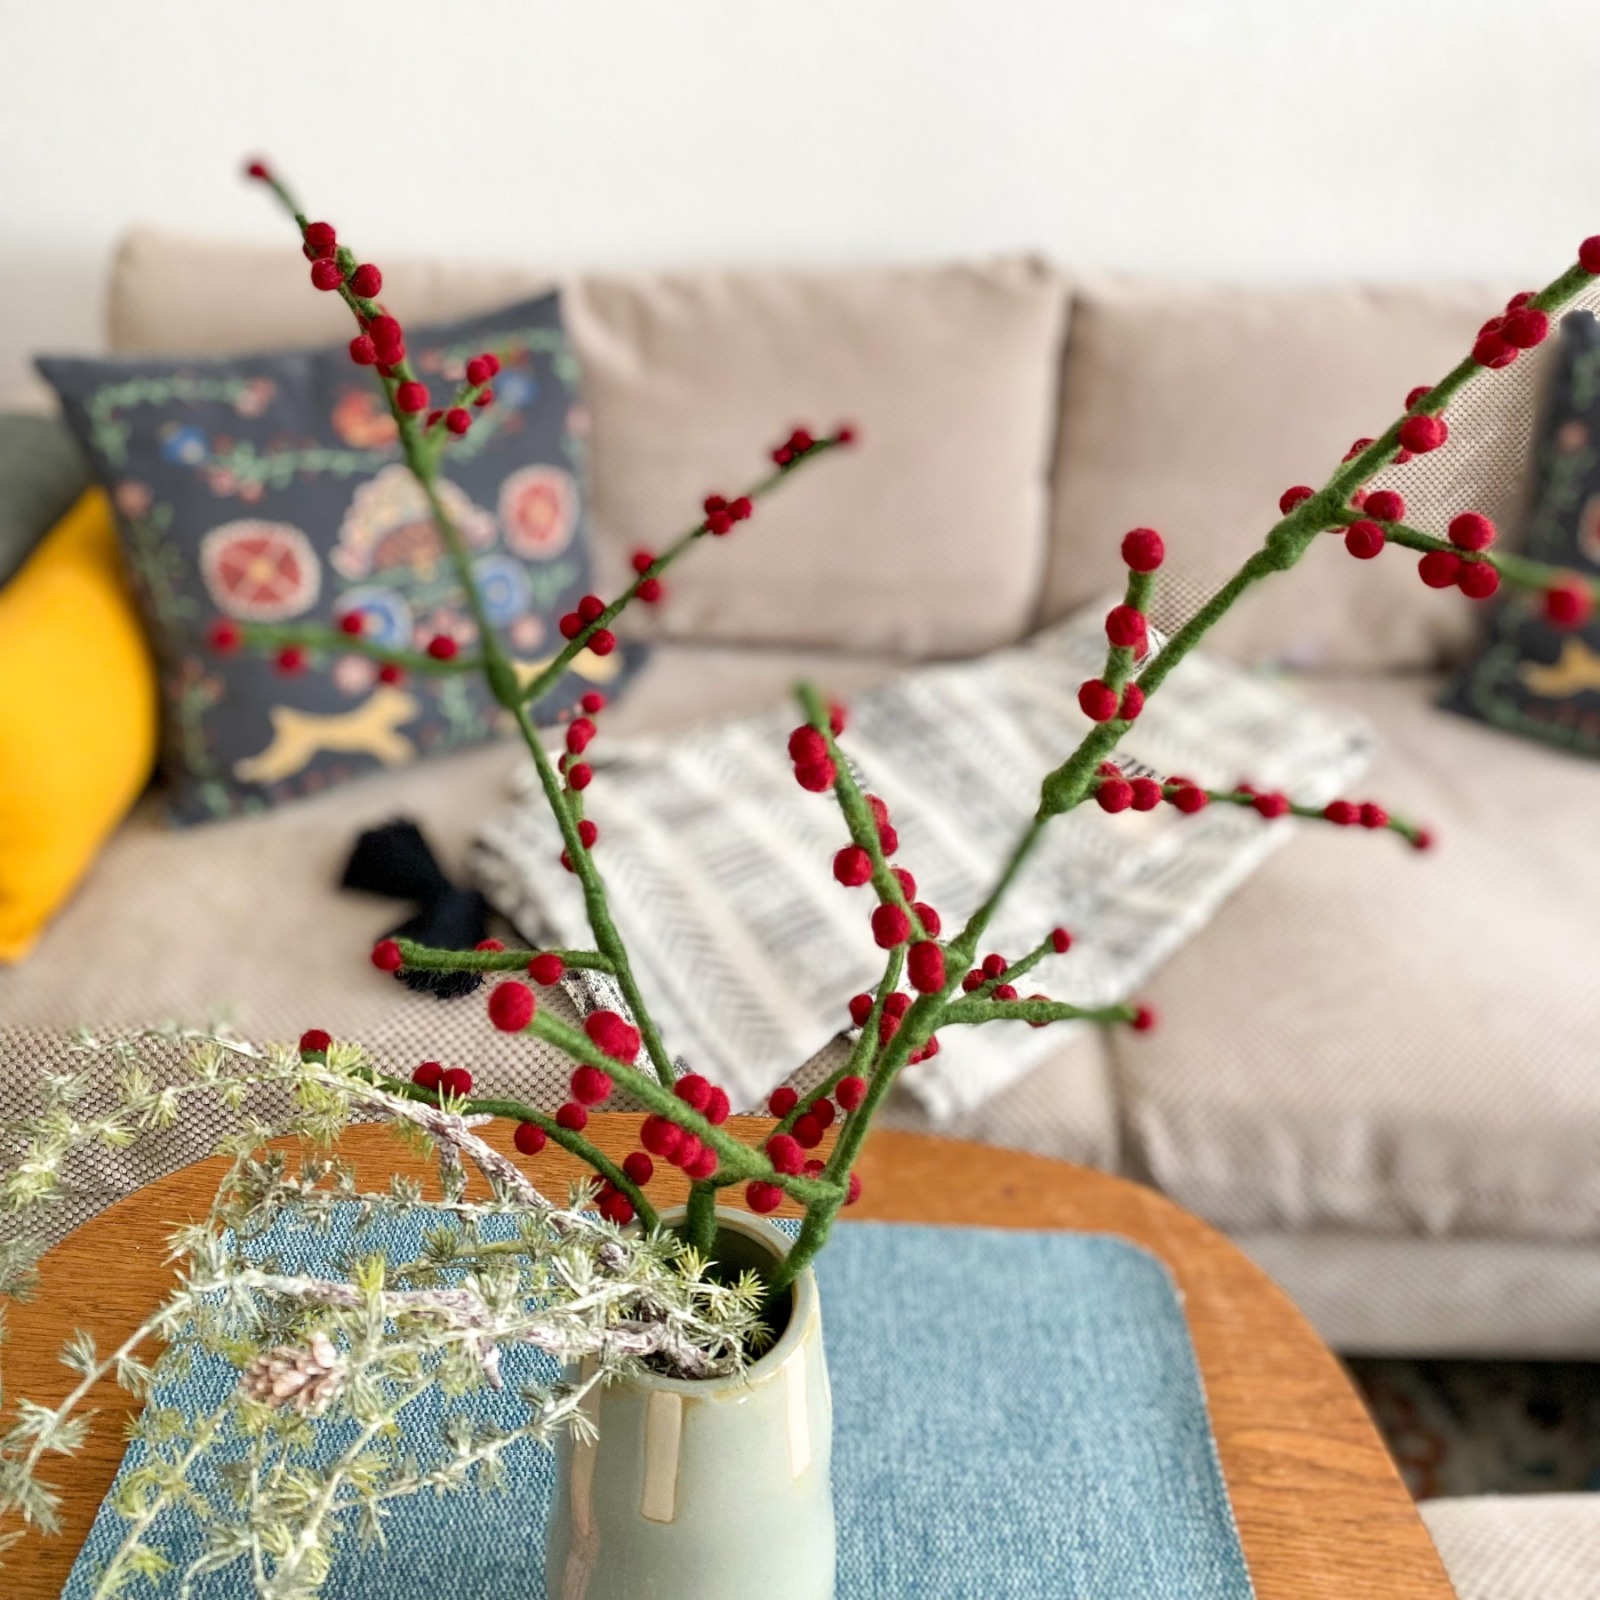 Beeren-Zweig mit roten Beeren, handgefilzt: Vielseitige Dekoration für jede Jahreszeit 3